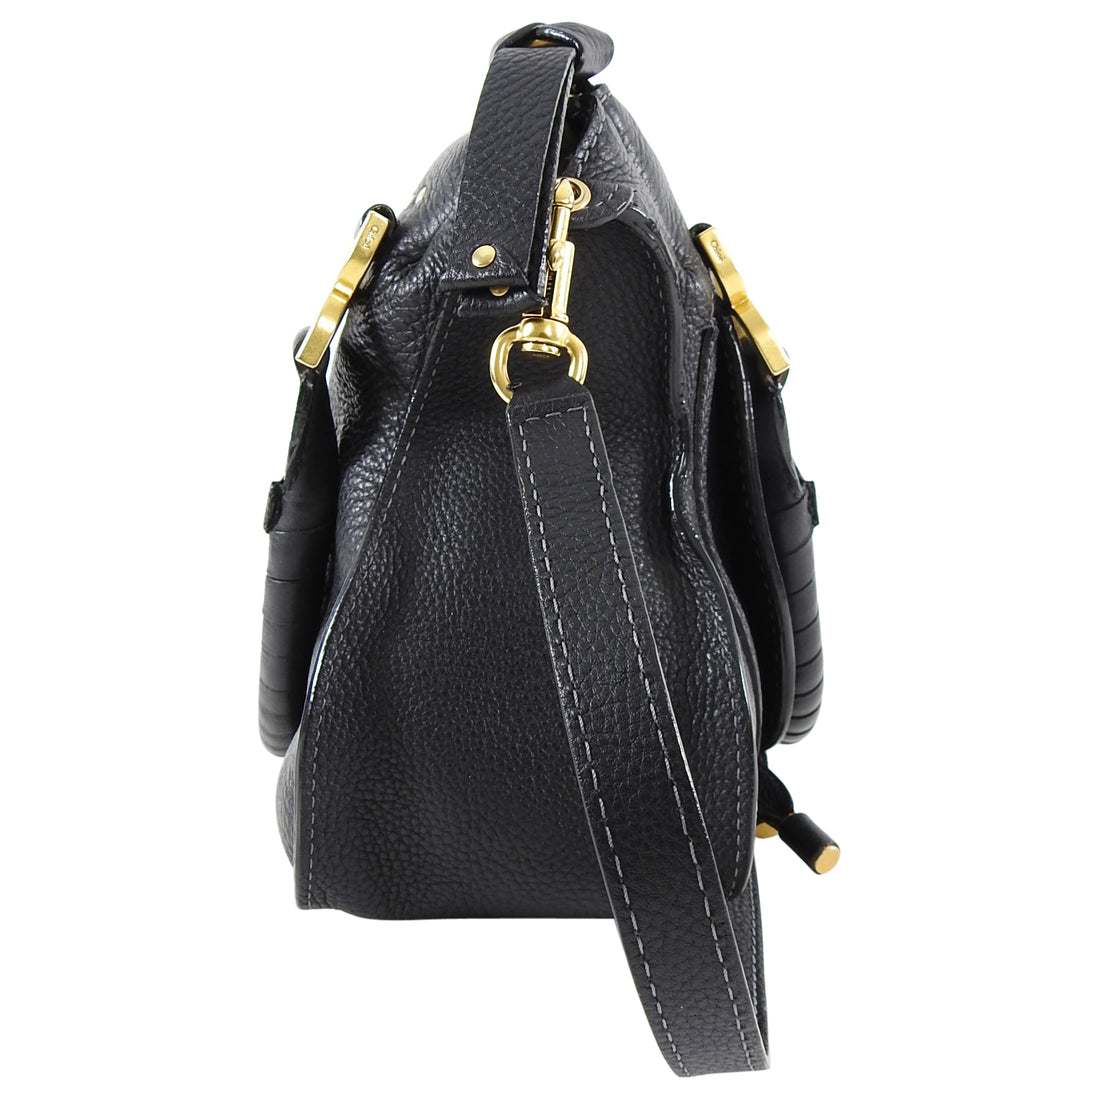 Chloe Black Leather Marcie Medium 2-way Bag